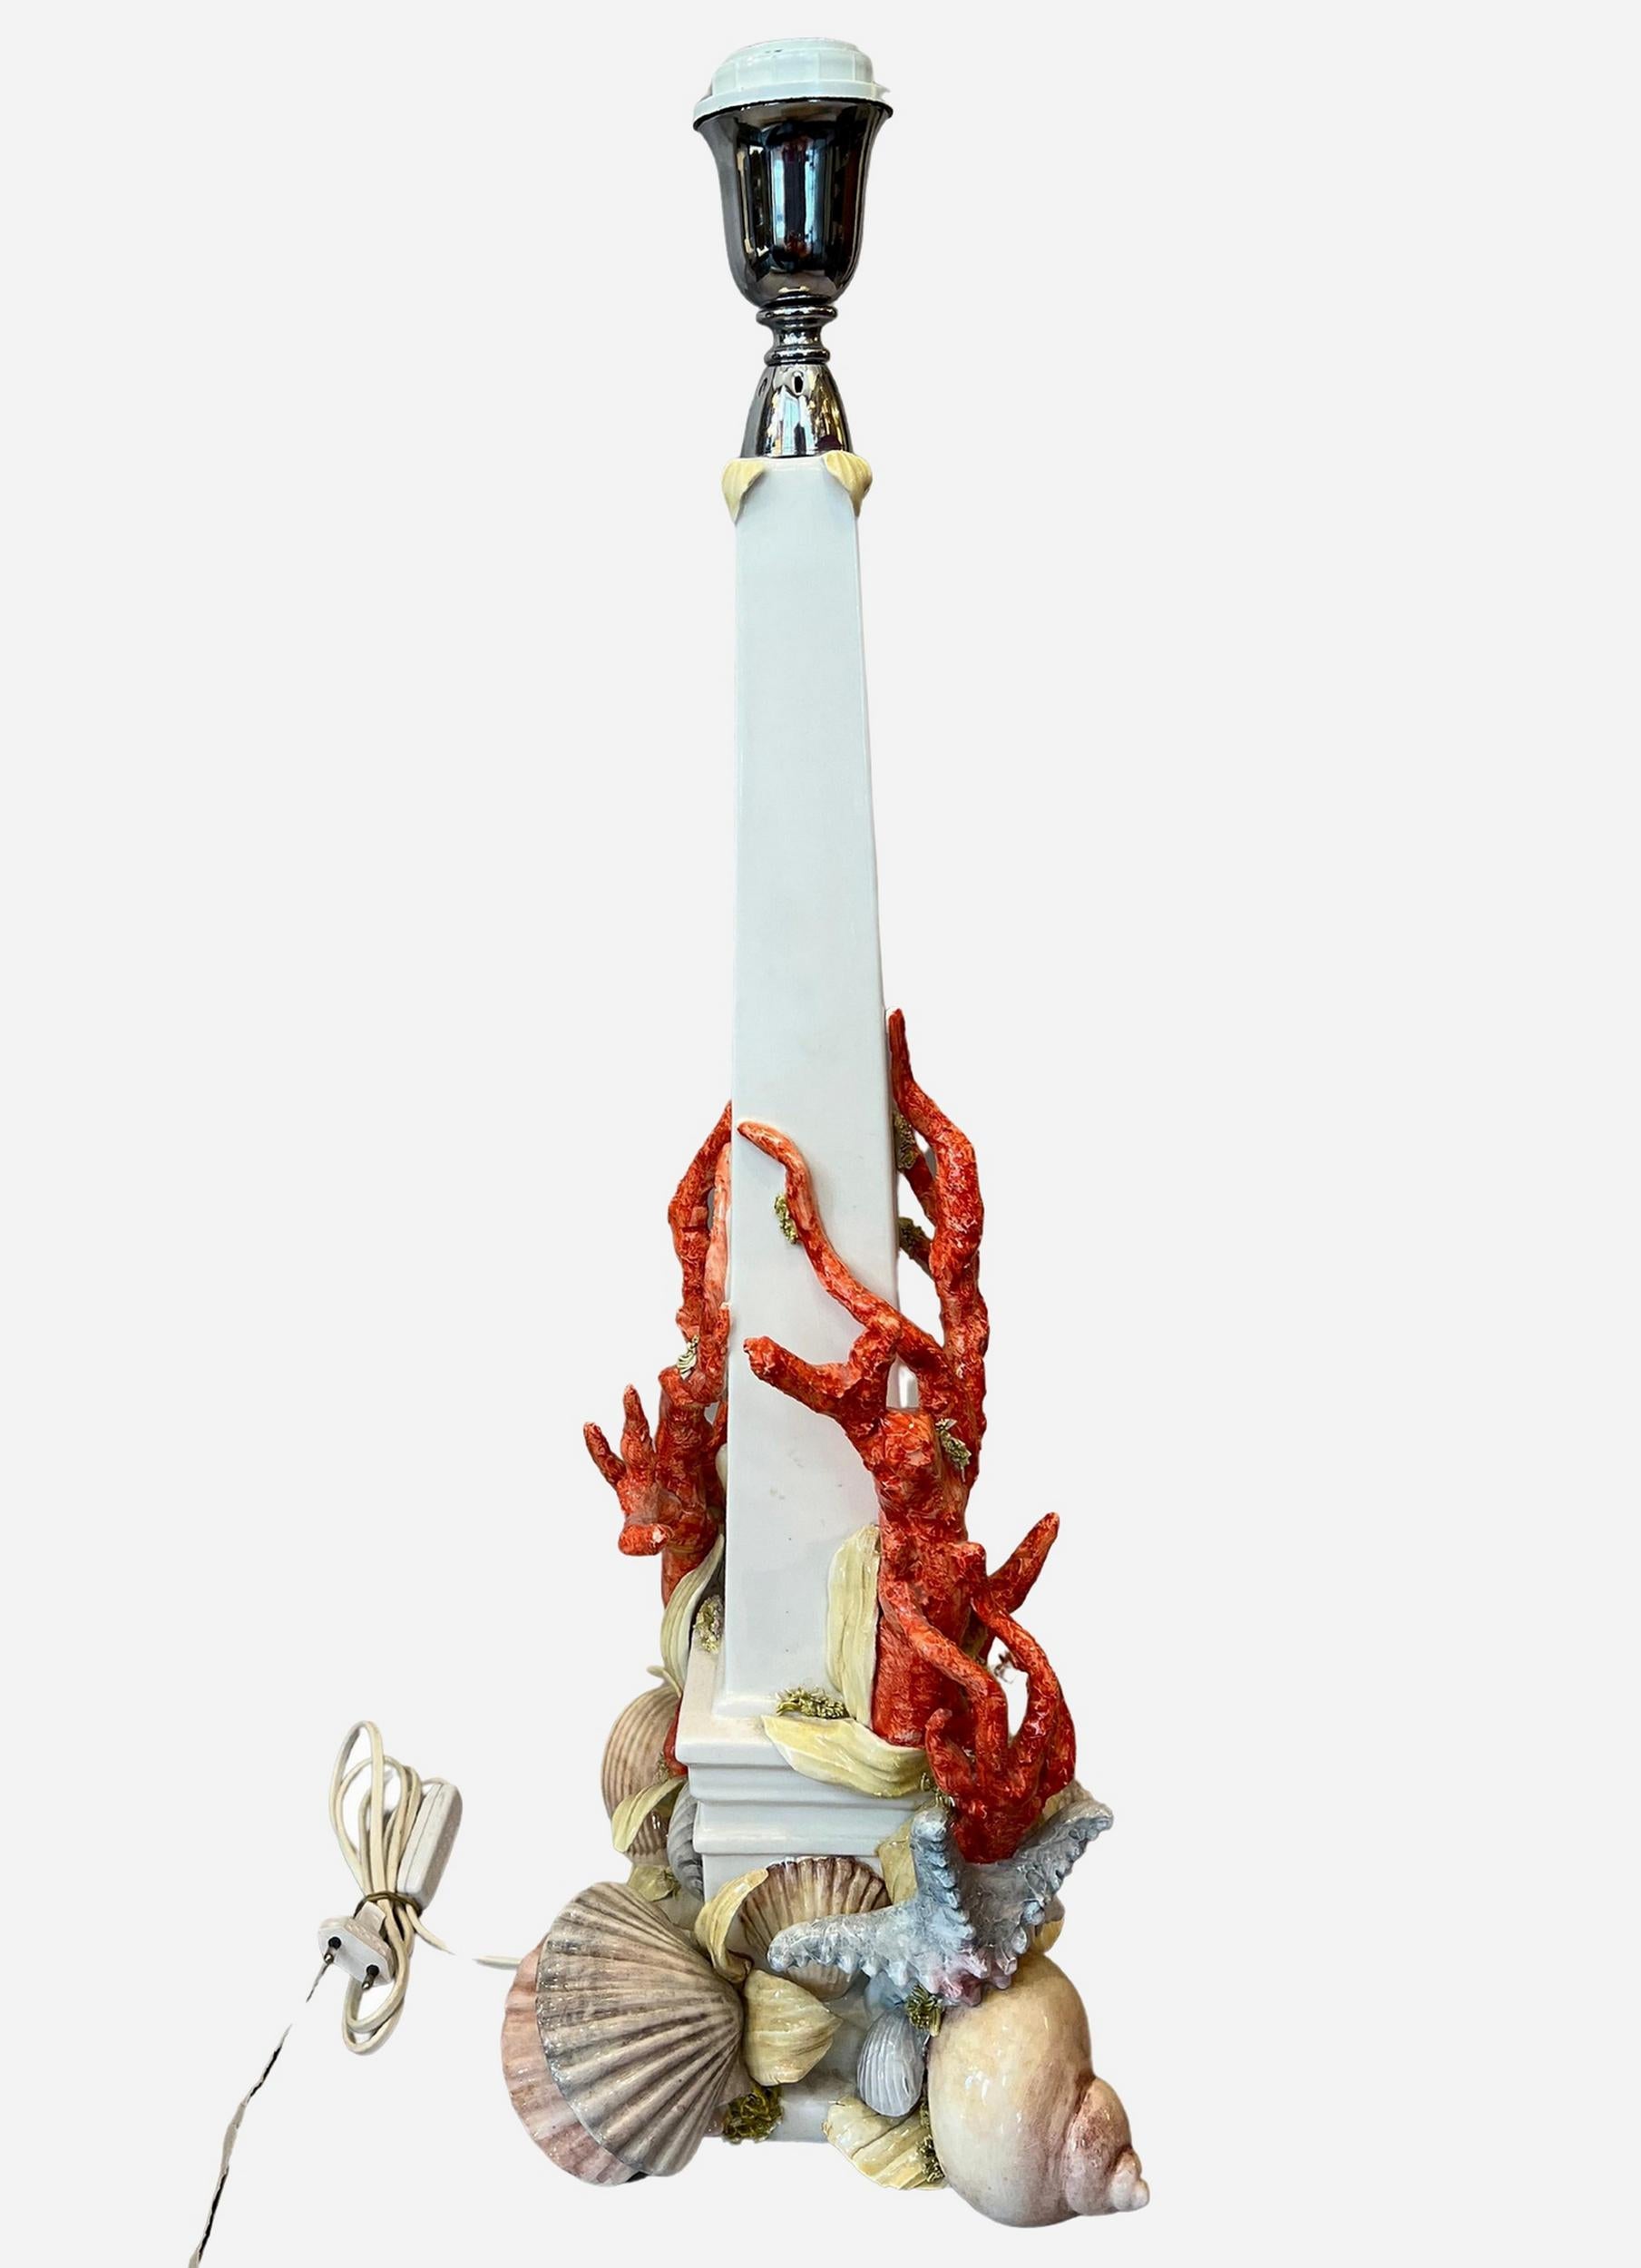 Pied de lampe en forme d'obélisque en céramique émaillée, décoré de coraux, d'algues, d'étoiles de mer et de coquillages, par Antonio Fullin Mollica.
Hauteur : 69 cm (27.2 inches)
Base : 25 x 25 cm (9.84 x 9.84 pouces)
